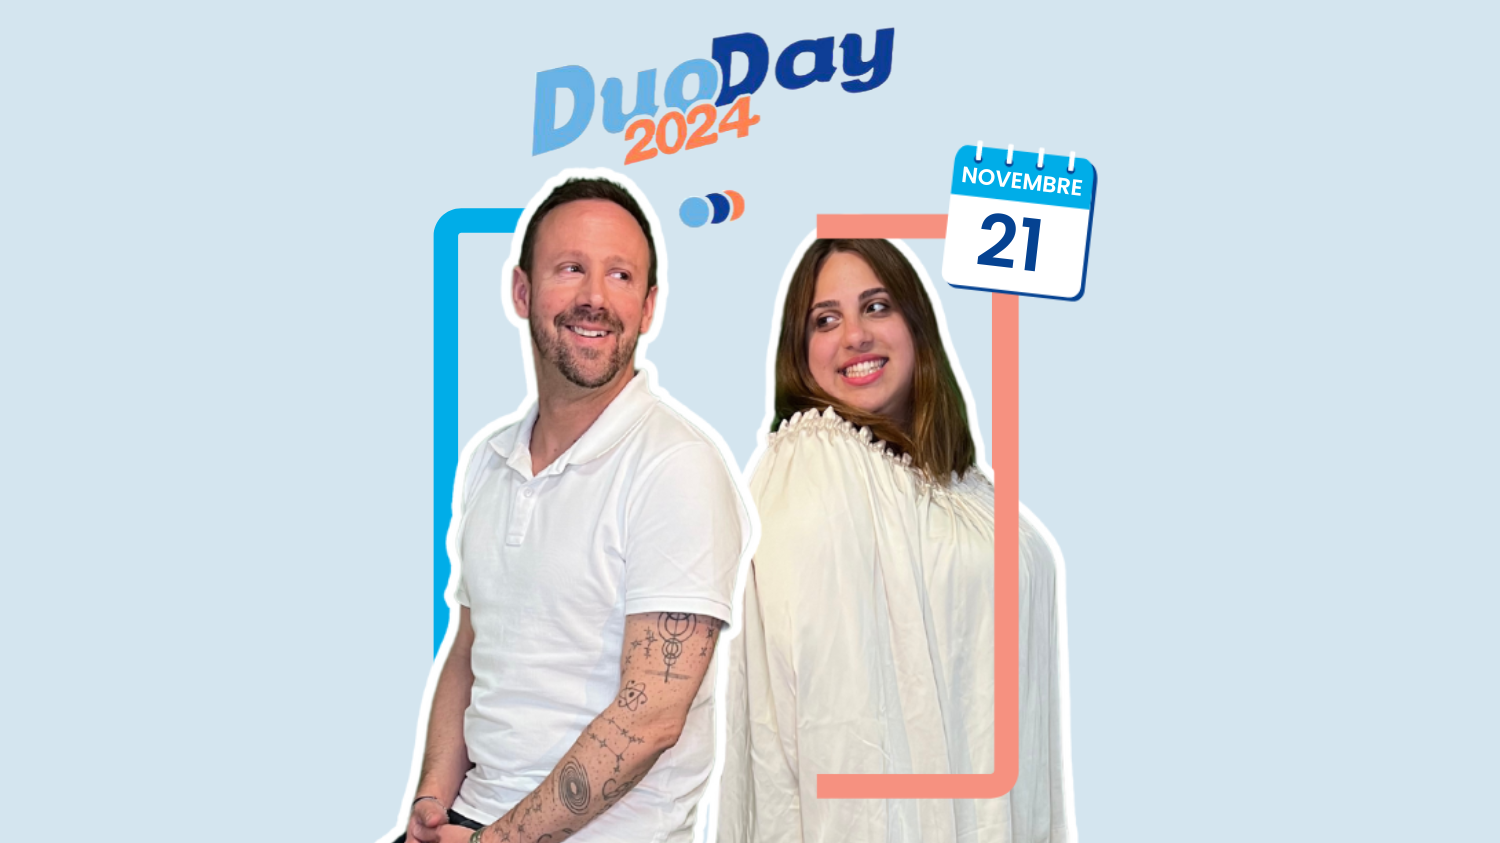 Le DuoDay 2024 : une opportunité professionnelle unique pour les personnes en situation de handicap💡